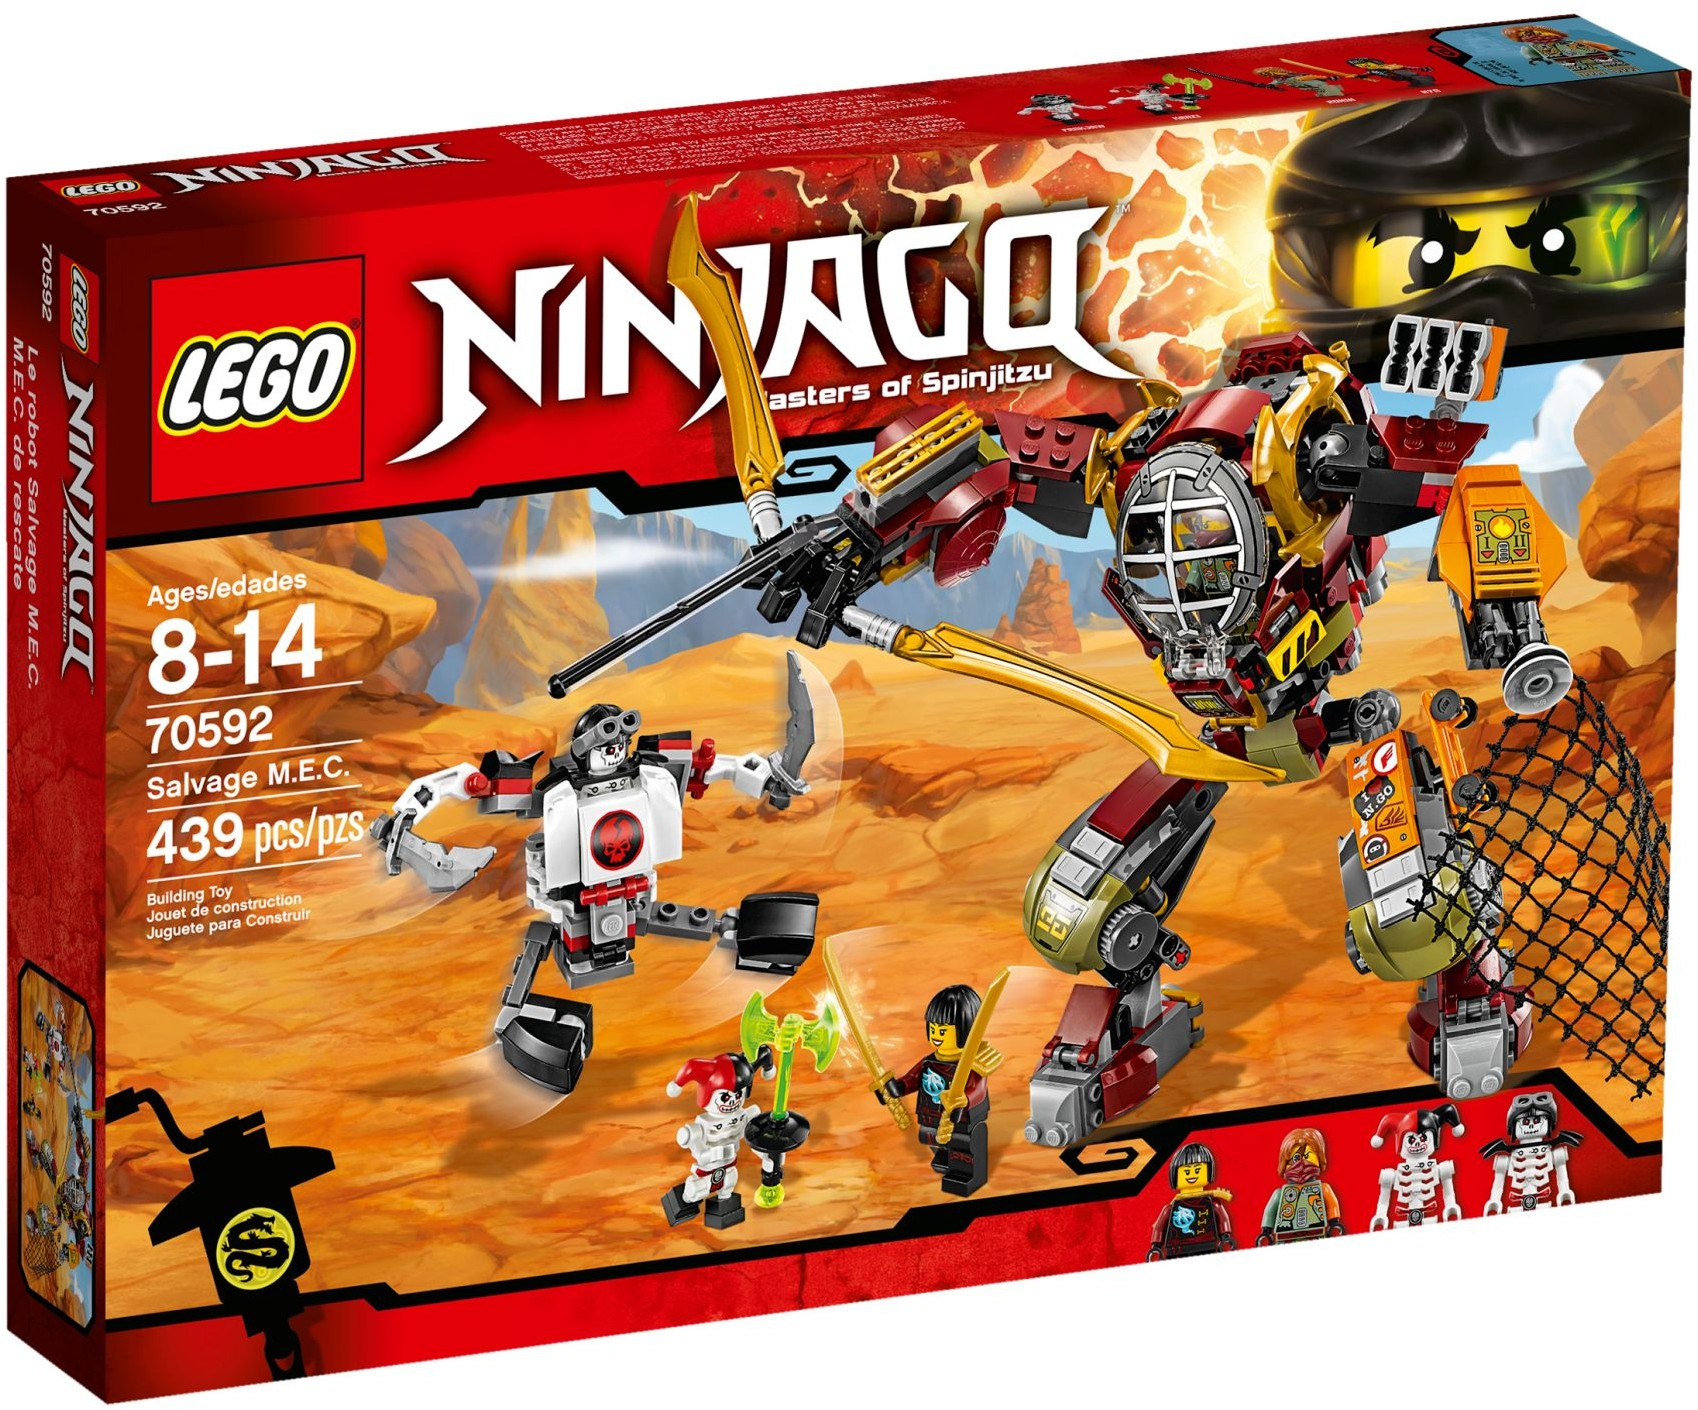 Ninjago (sets) | Ninjago Wiki | Fandom